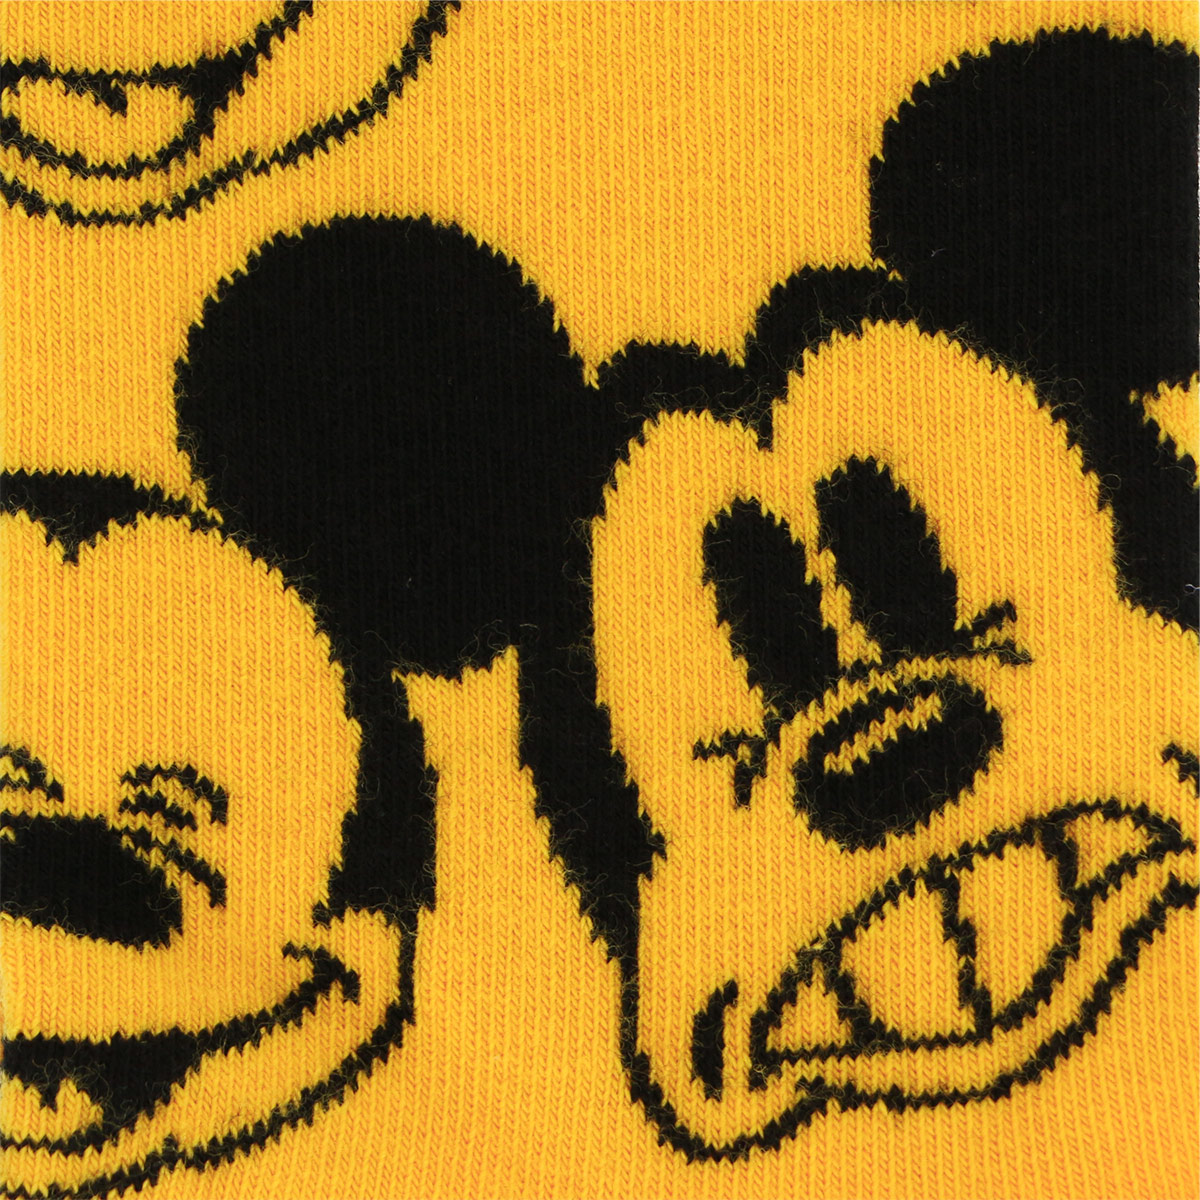 ハッピーソックス 【Limited】Happy Socks × Disney ( ディズニー )  FACE IT, MICKEY  （ フェイスイット ミッキー ） クルー丈 ソックス レディース